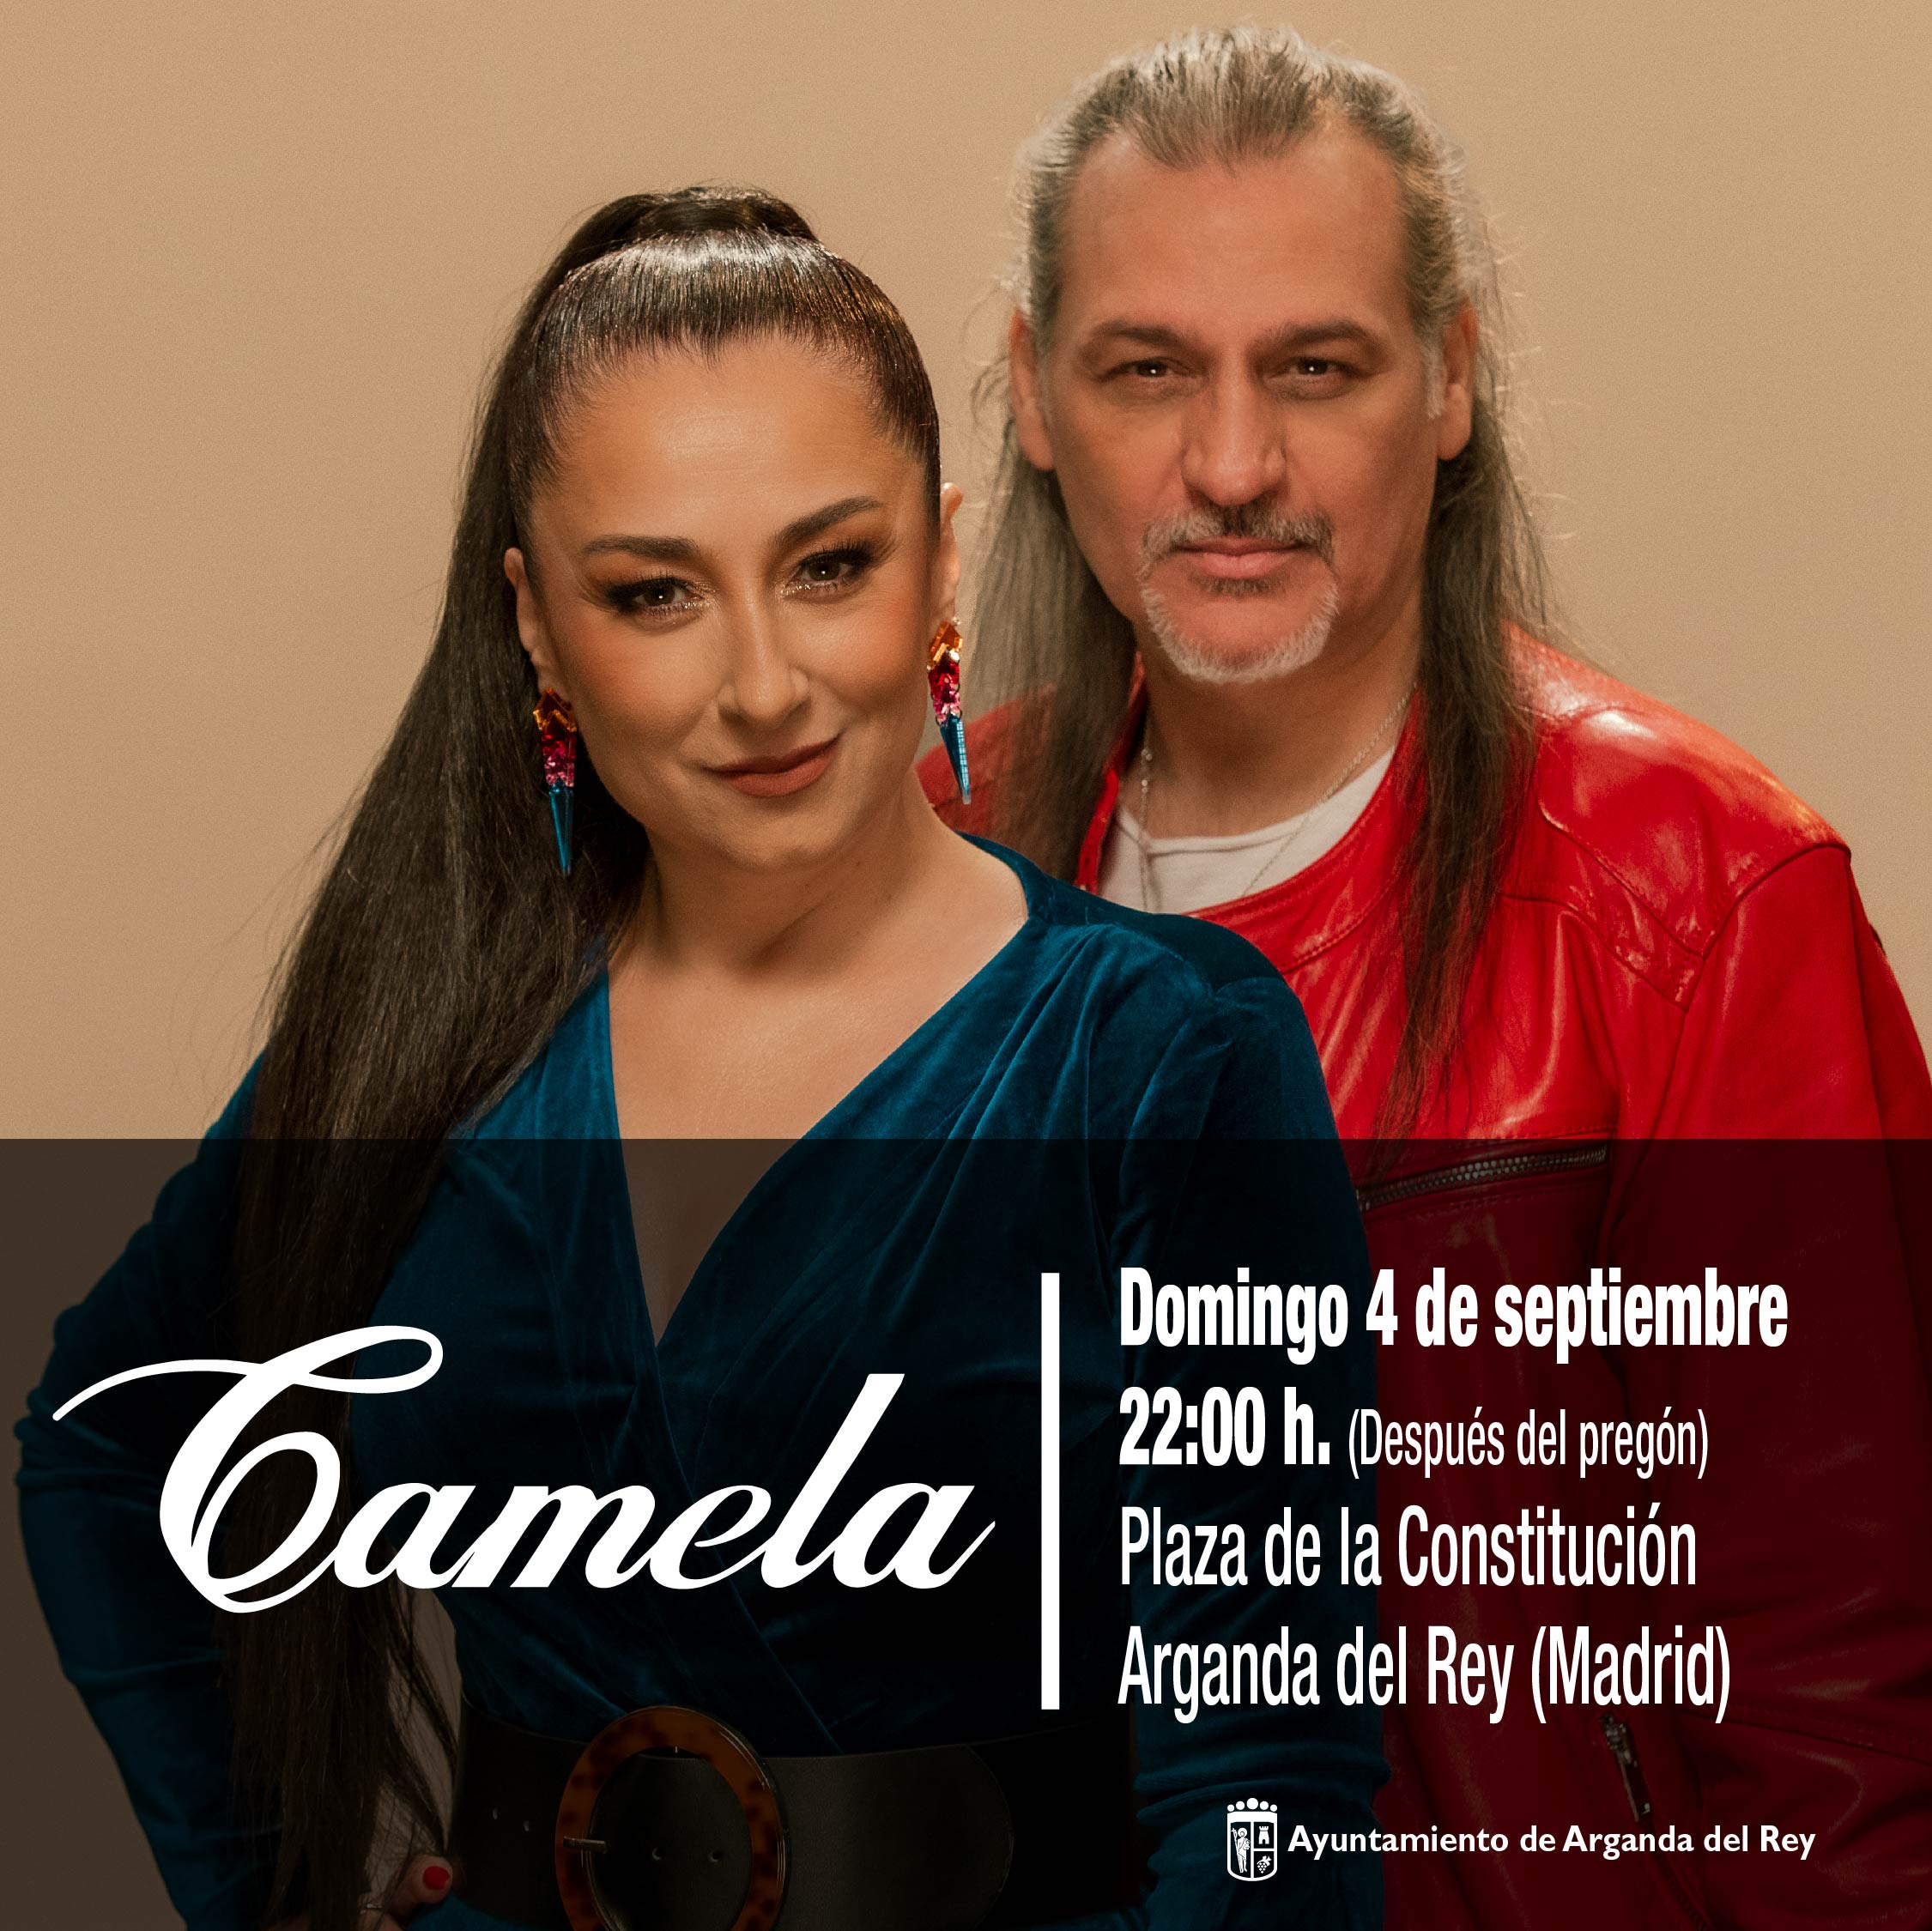 El grupo musical Camela actuará en las Fiestas Patronales 2022